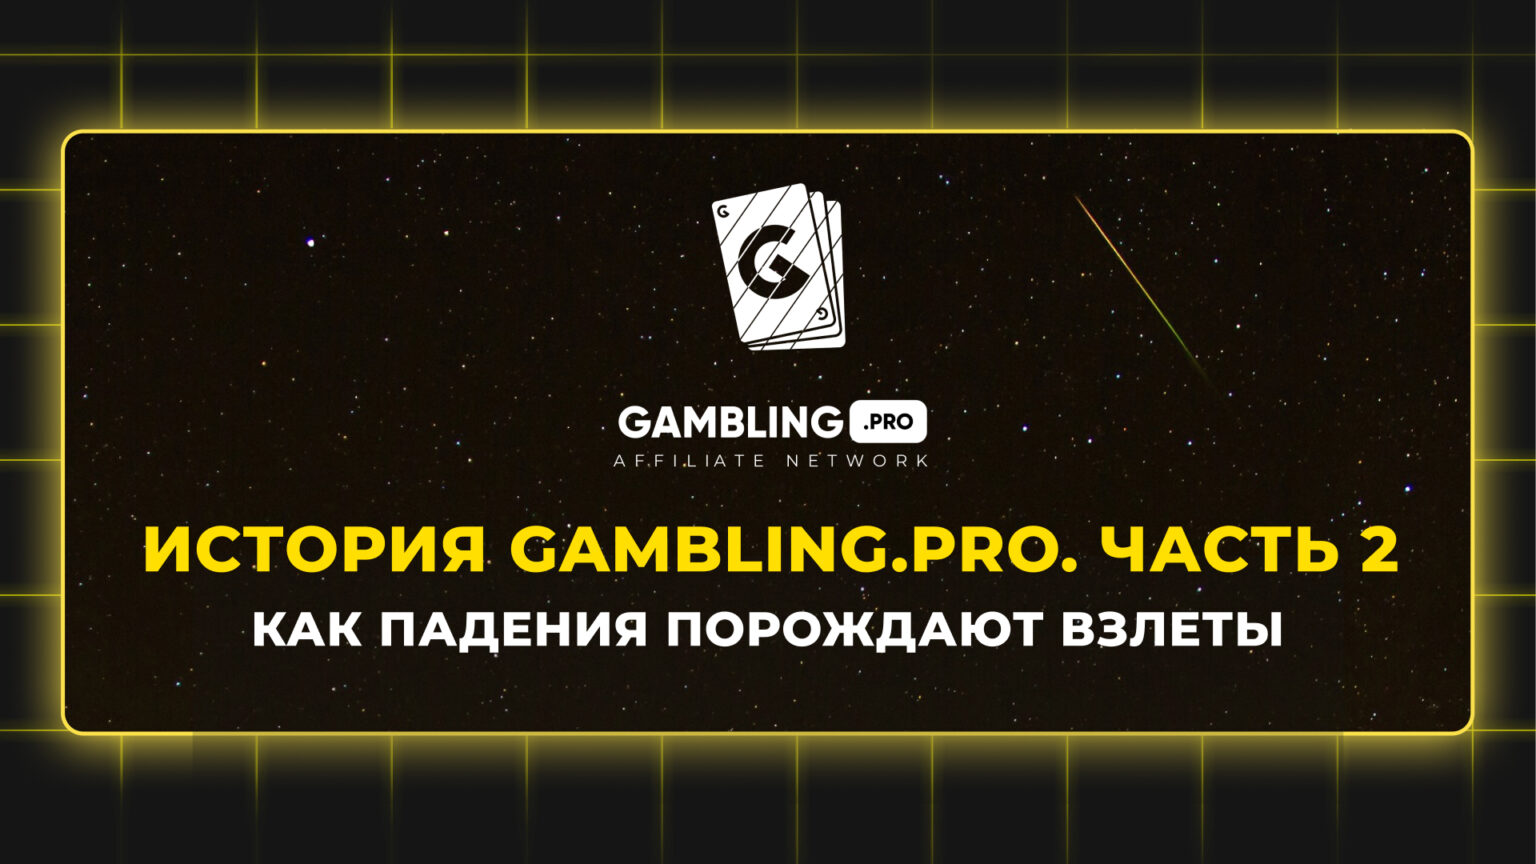 Как падения порождают взлеты? История Gambling.pro. Часть 2